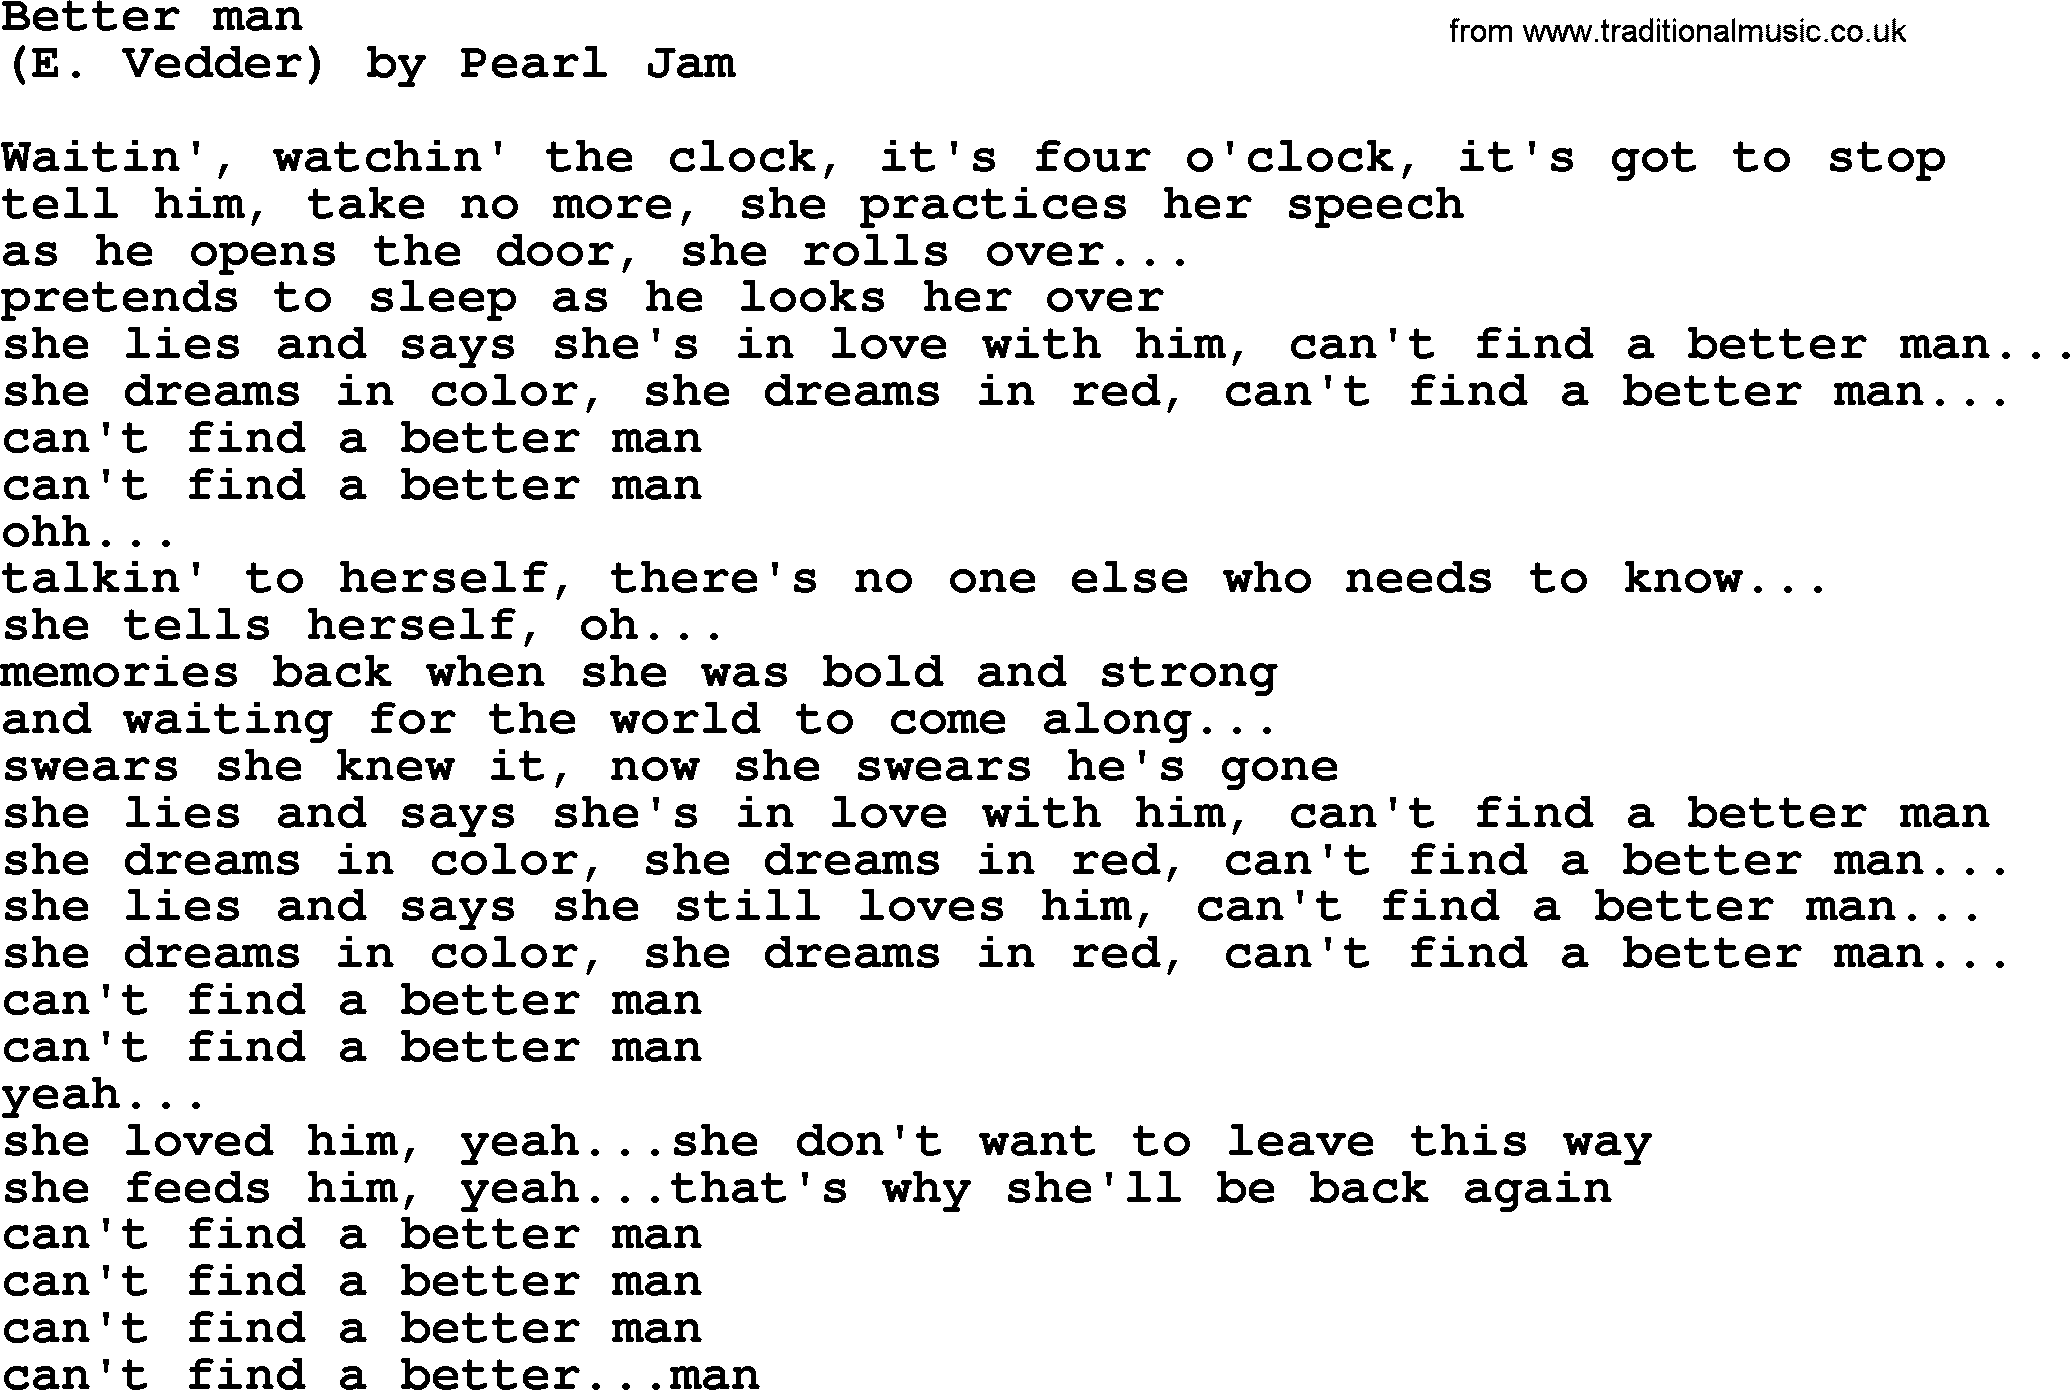 Bruce Springsteen song: Better Man lyrics